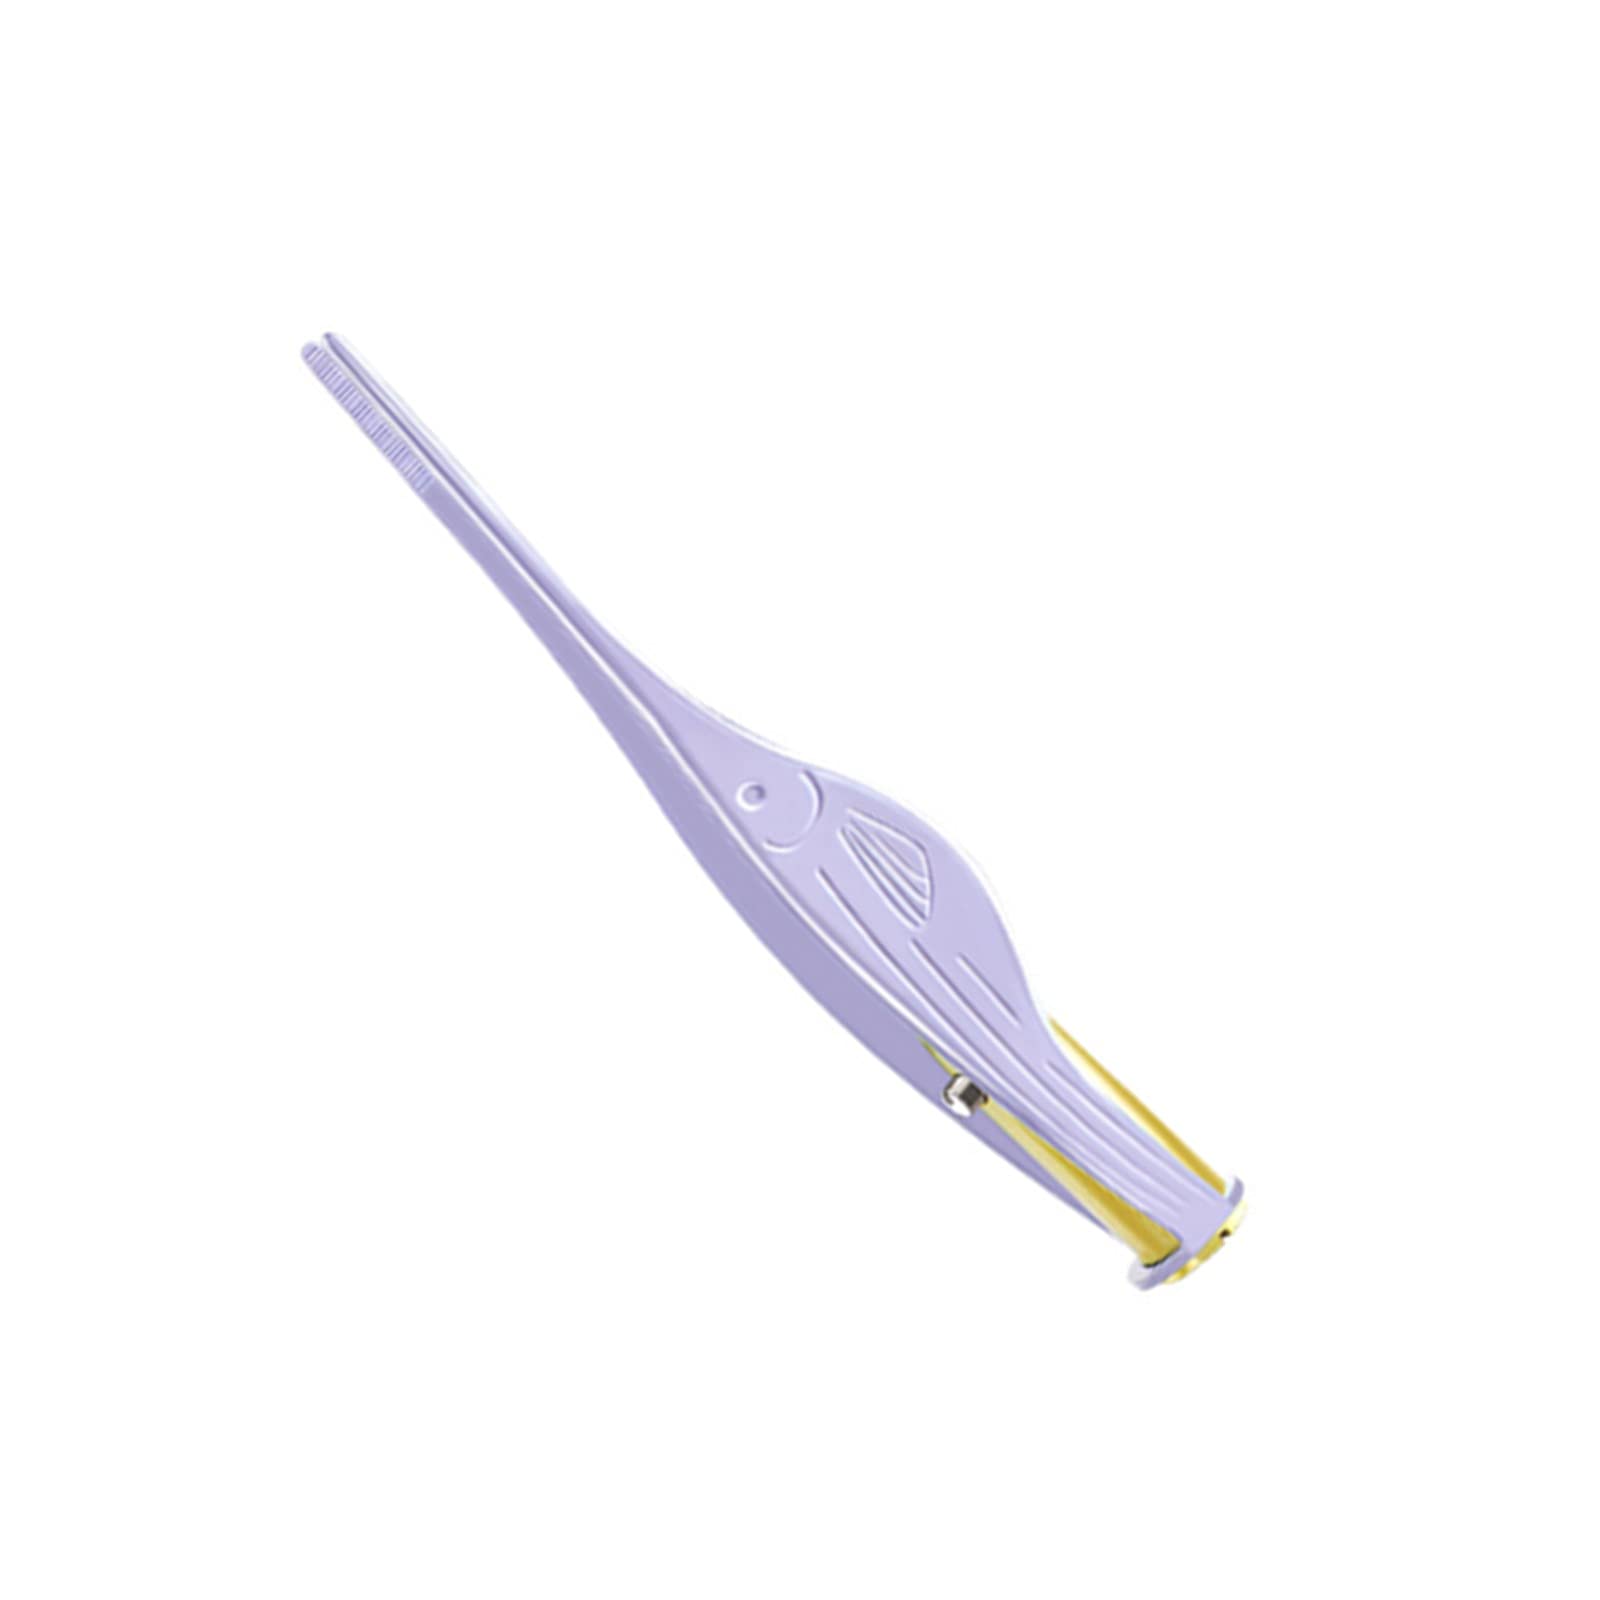 YFFSFDC LEDライト付き耳かき ピンセットローズゴールド 耳掃除 子供用 極細先端 ステンレス製 ピンセットタイプ ミミ光棒 はっきり見える (パープル)